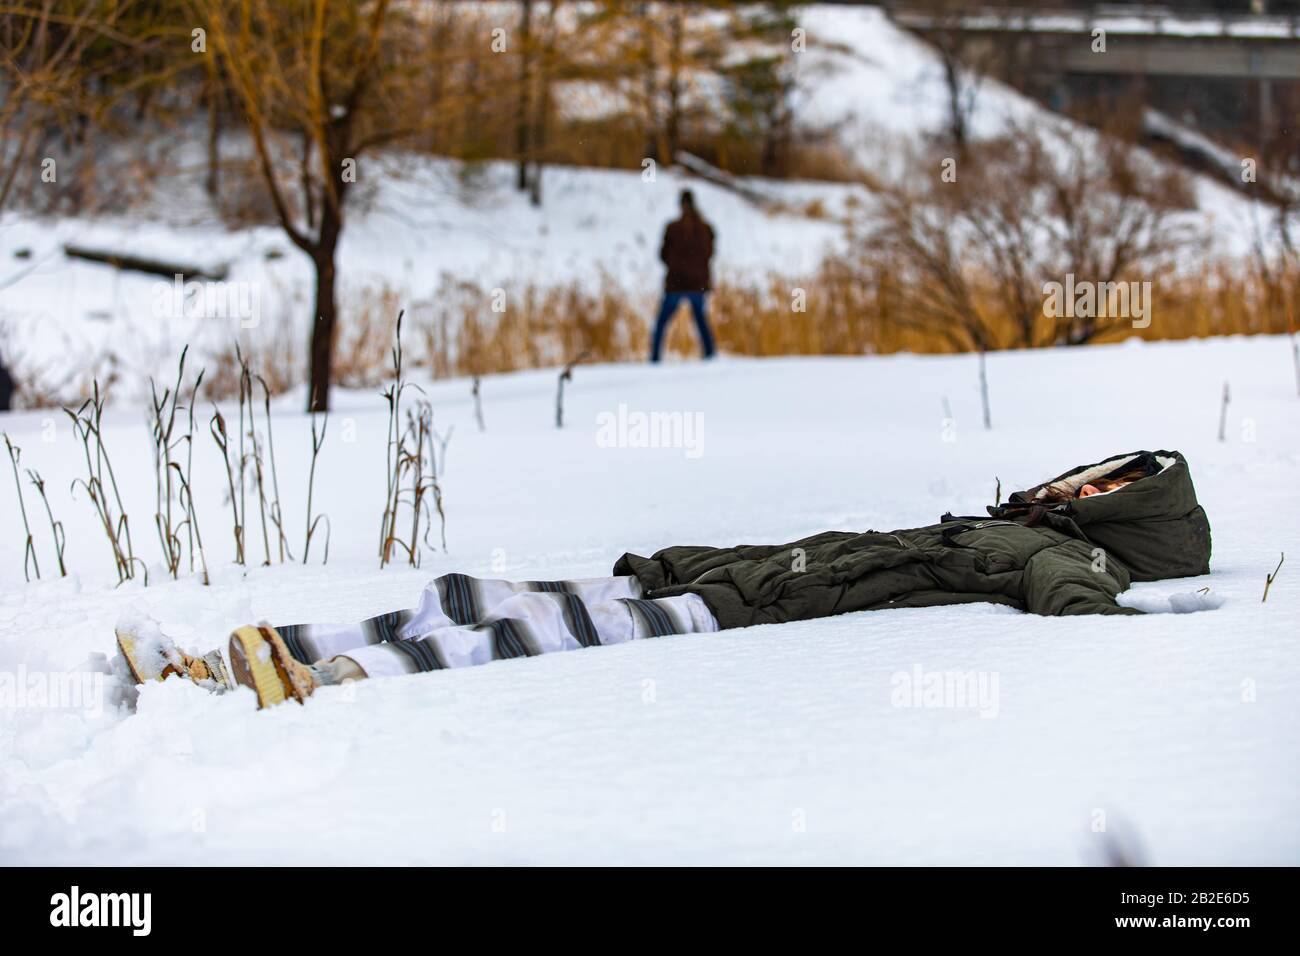 La ragazza che si trova sulla neve e fa un esercizio di yoga. La menzogna nella donna della neve che medita rafforzando il suo legame con la natura Foto Stock